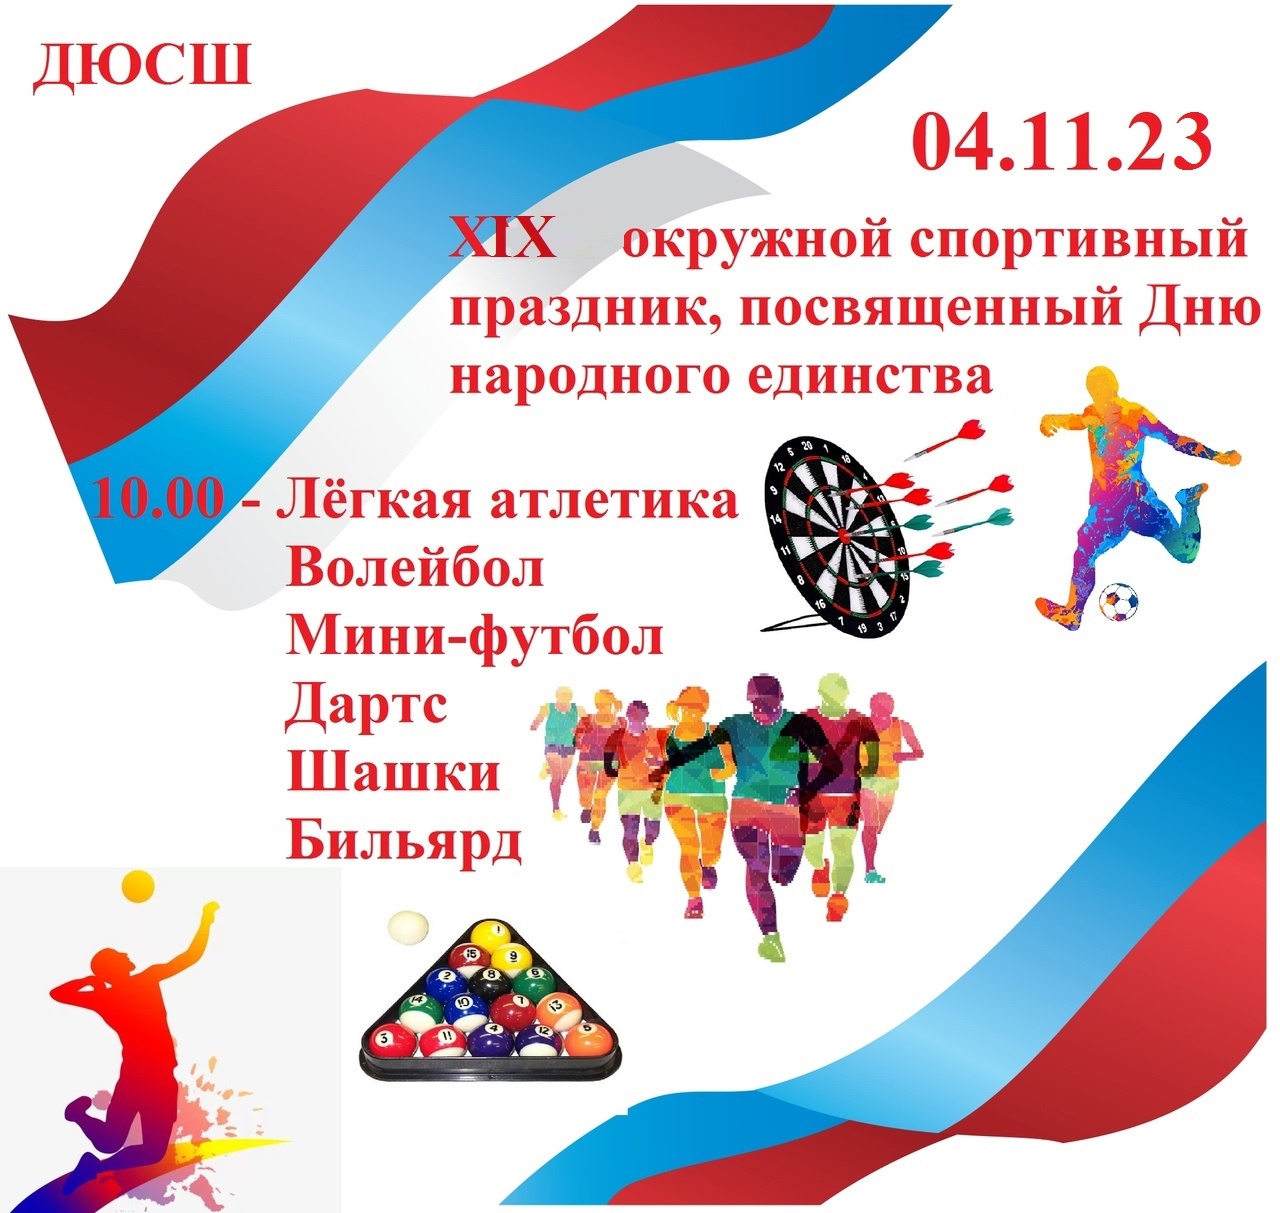 XIX окружной спортивный праздник, посвященный дню народного единства.